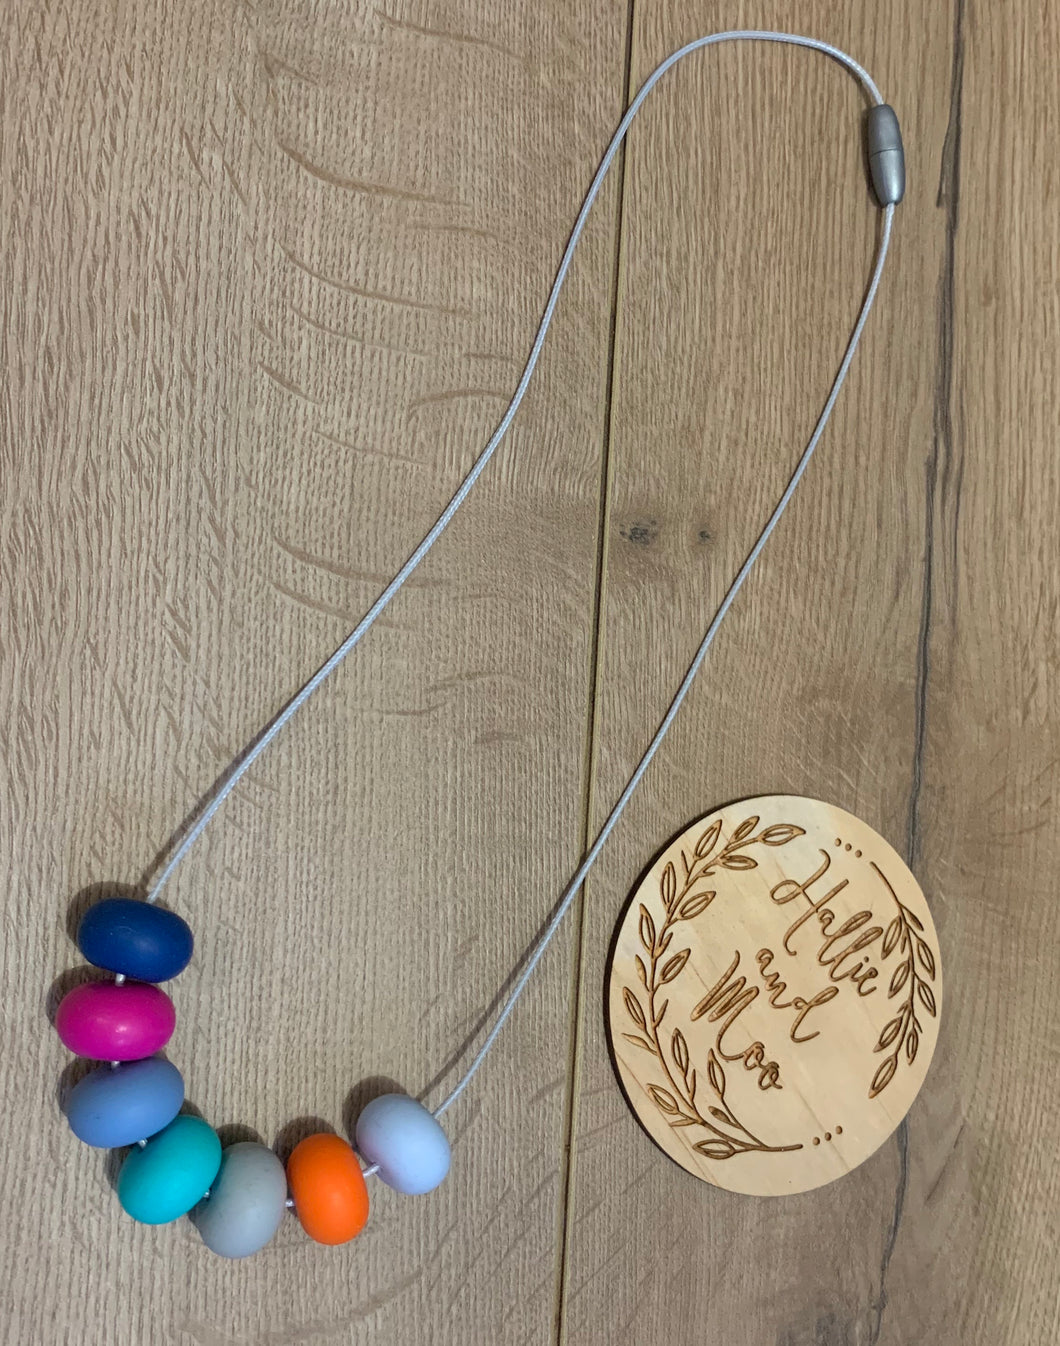 Silicon bead nursing necklace